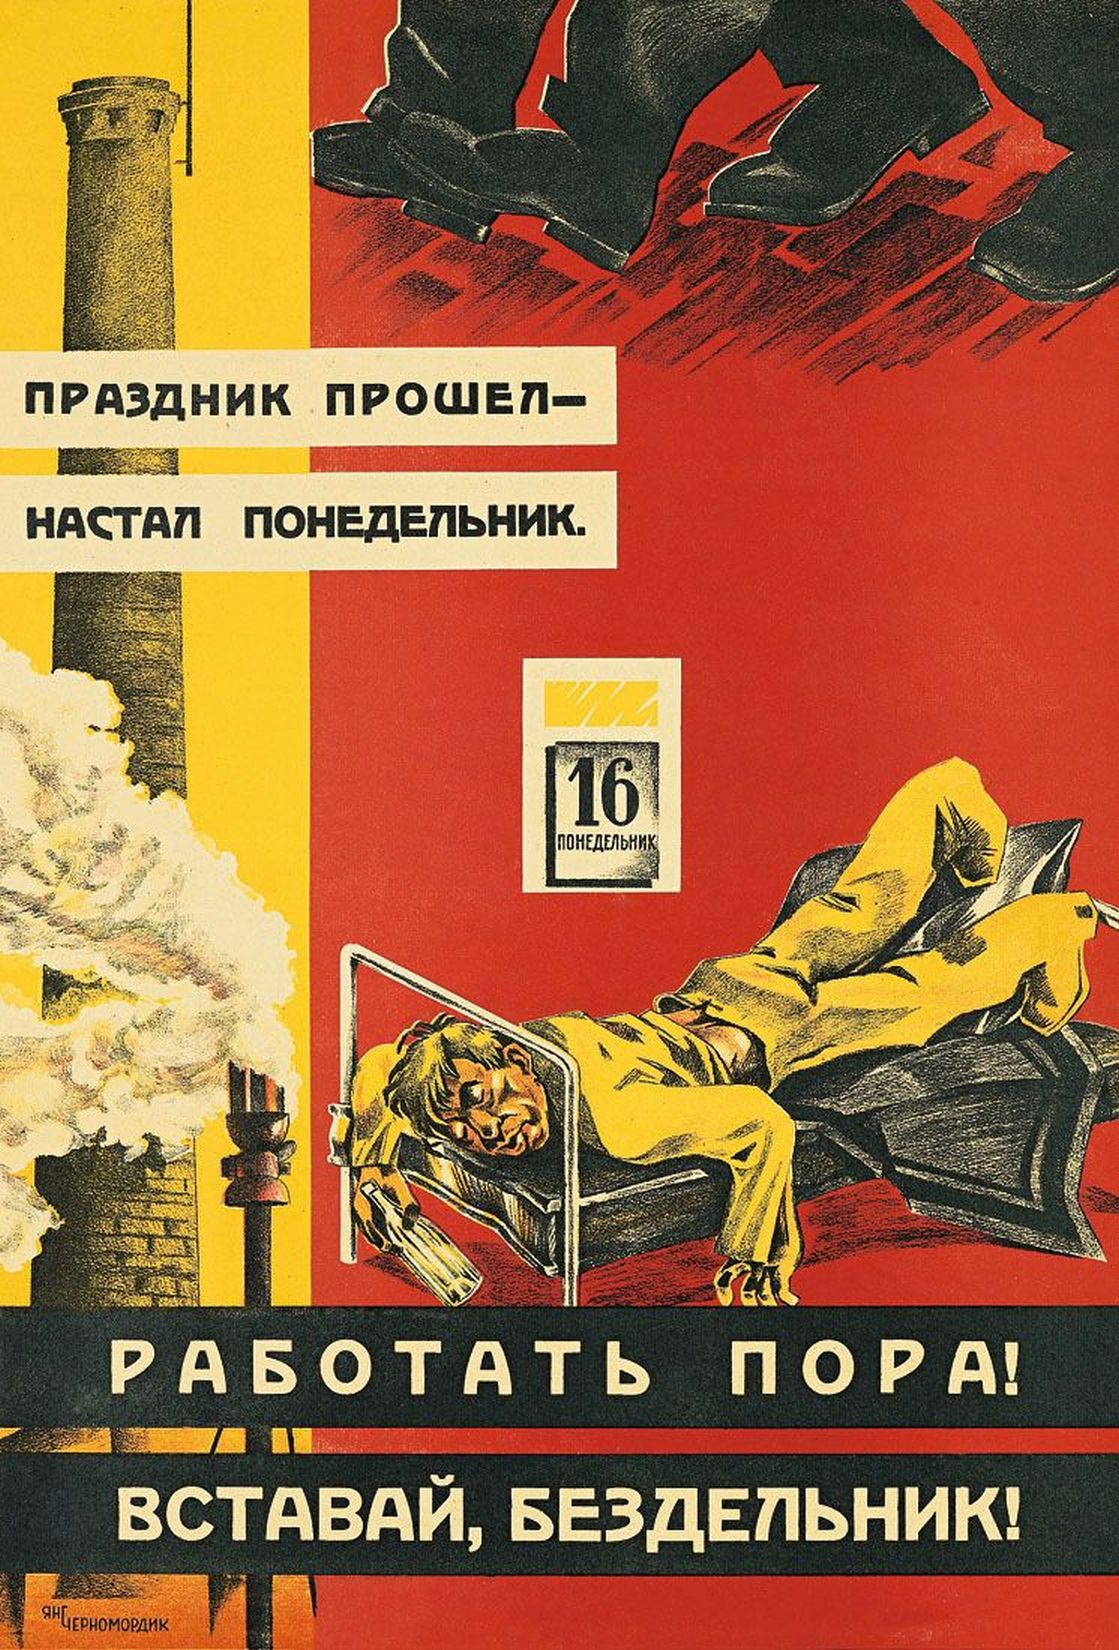 Скорей бы понедельник и снова. Советский плакат про понедельник. Советские плакаты про бездельников. Советский плакат пора работать. Советские плакаты про тунеядцев.